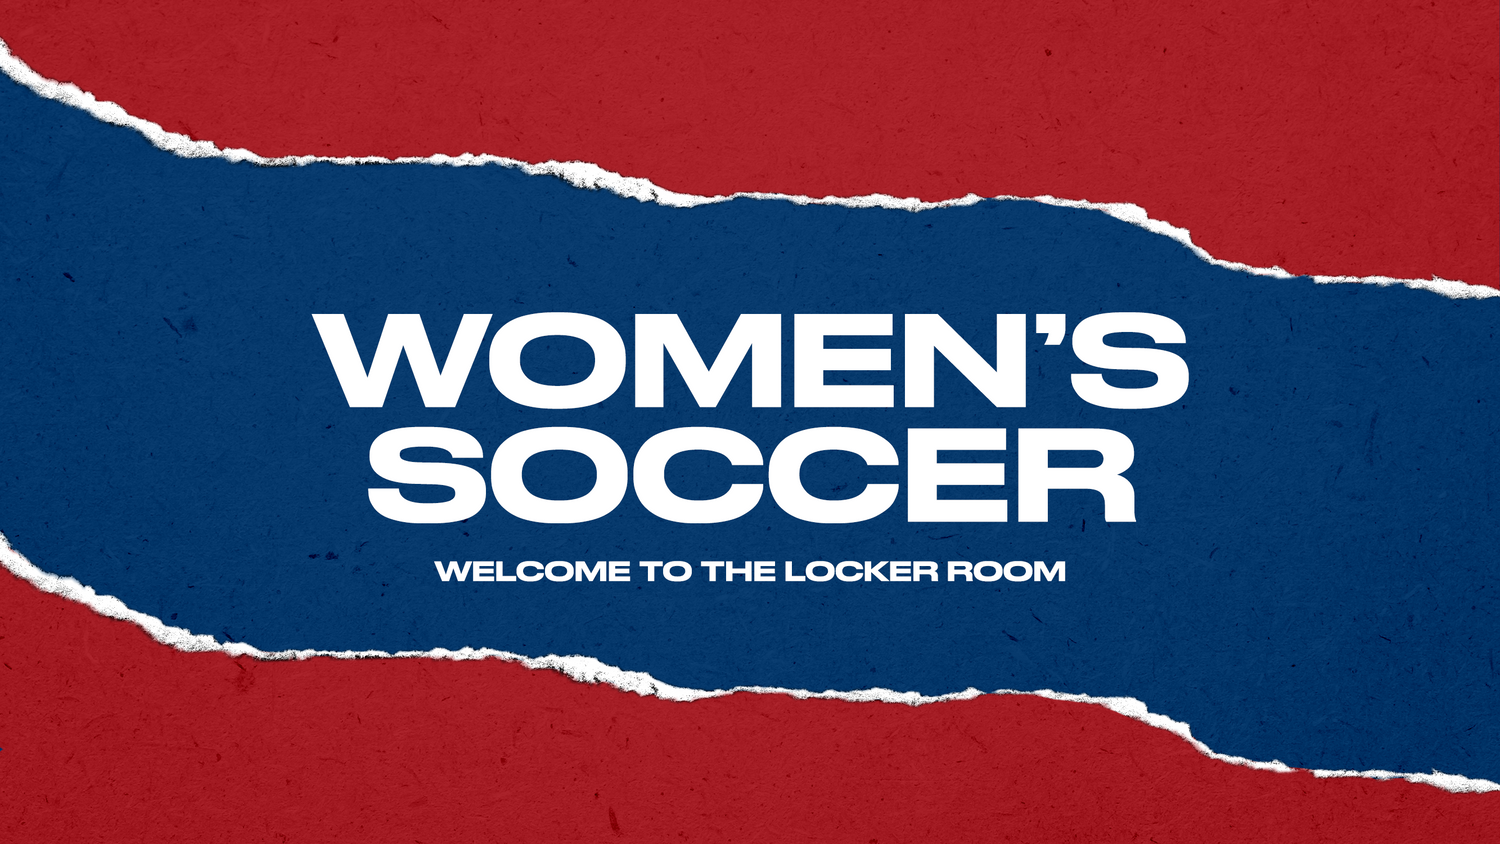 Women's Soccer